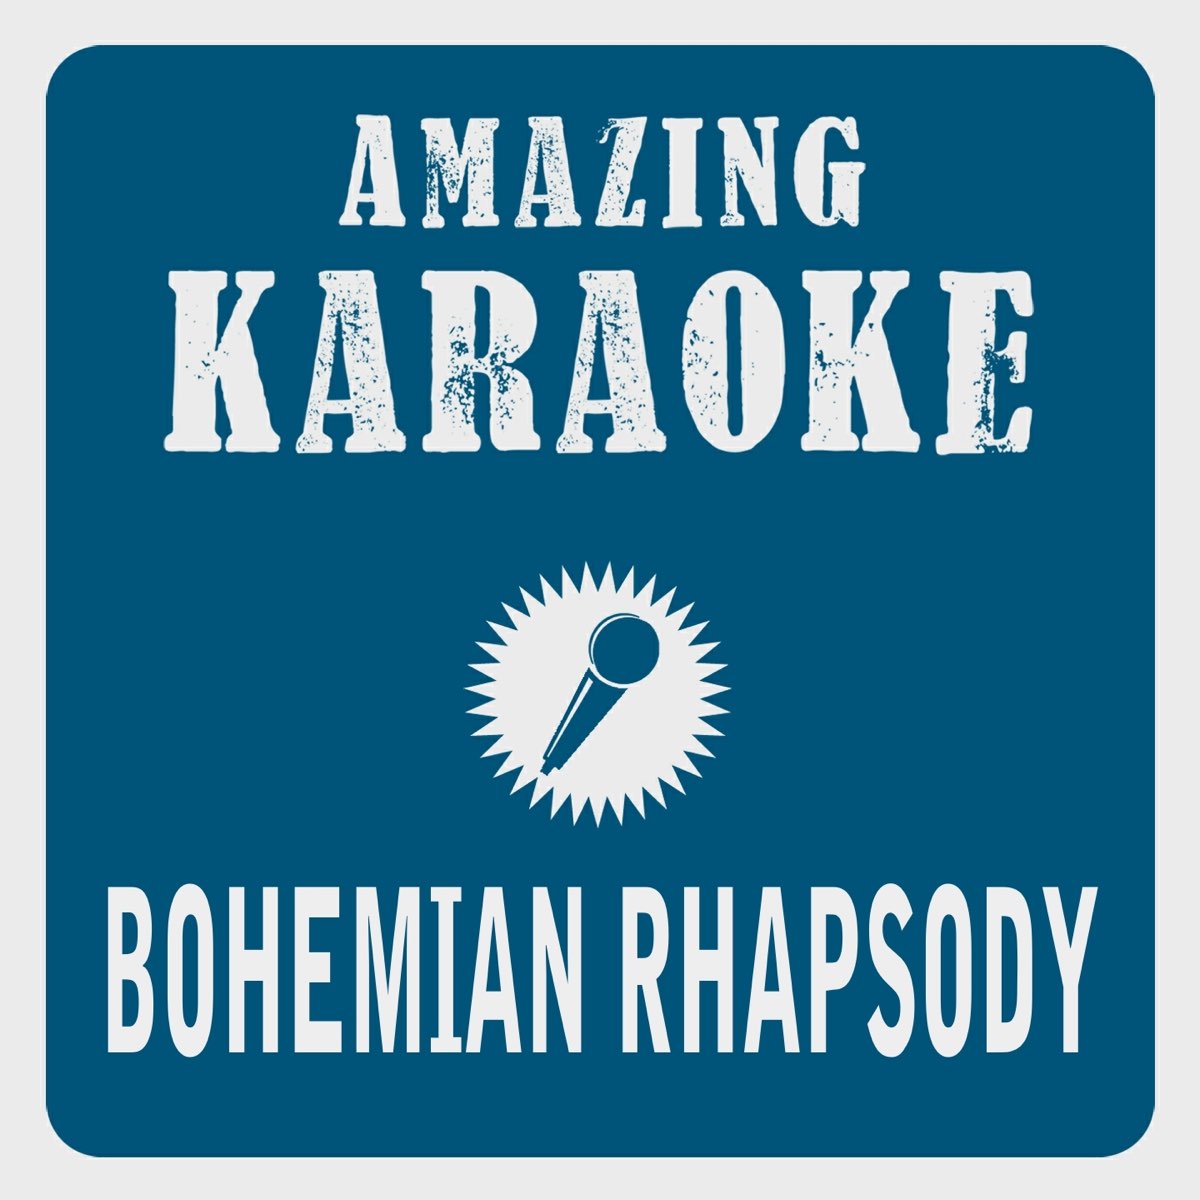 Bohemian Rhapsody (Karaoke Version) by Clara Oaks on Apple Music